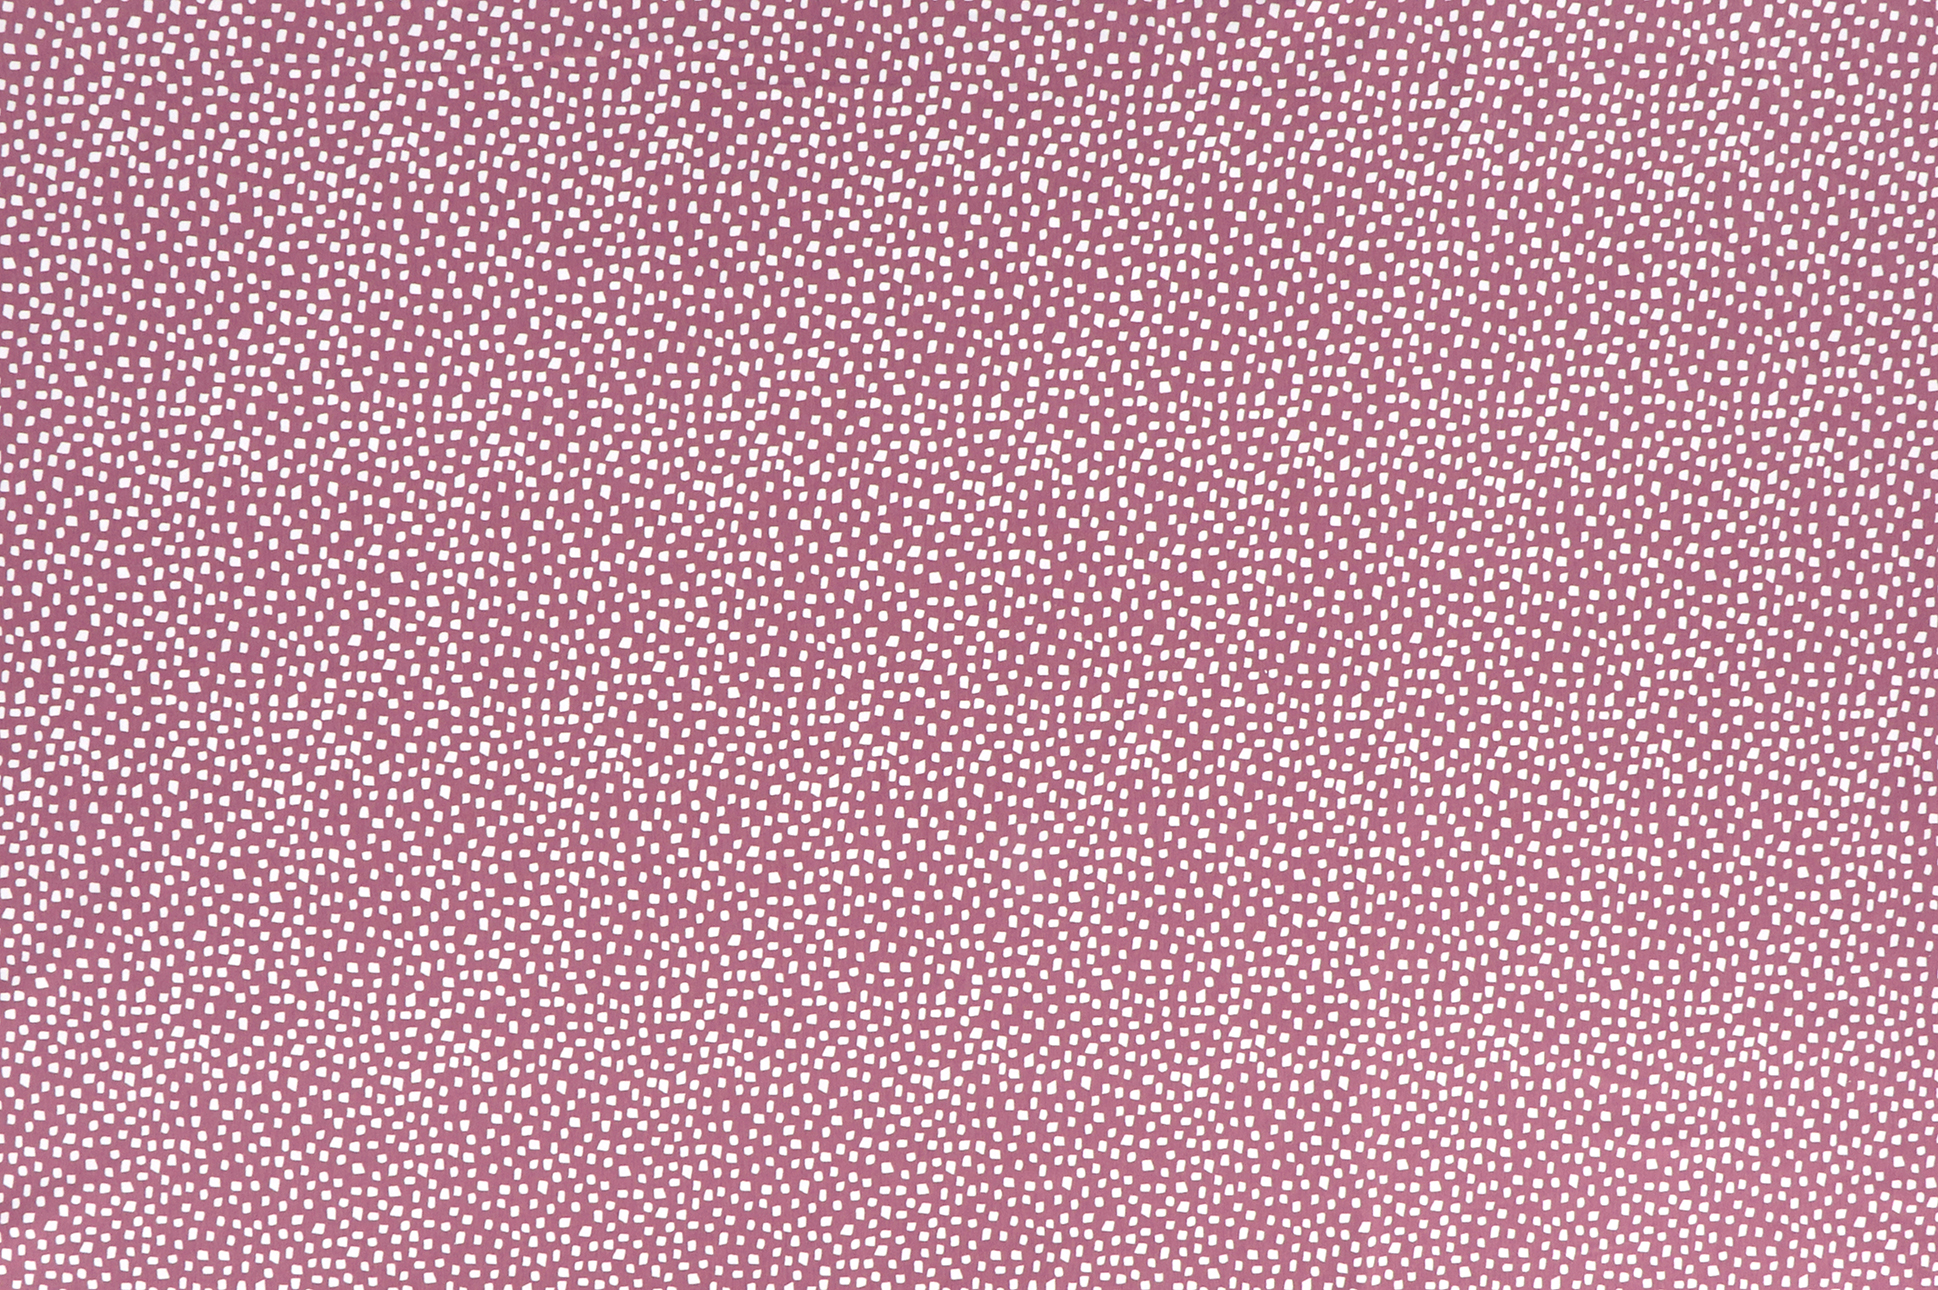 Jersey di cotone, quadratini irregolari su fondo rosa antico